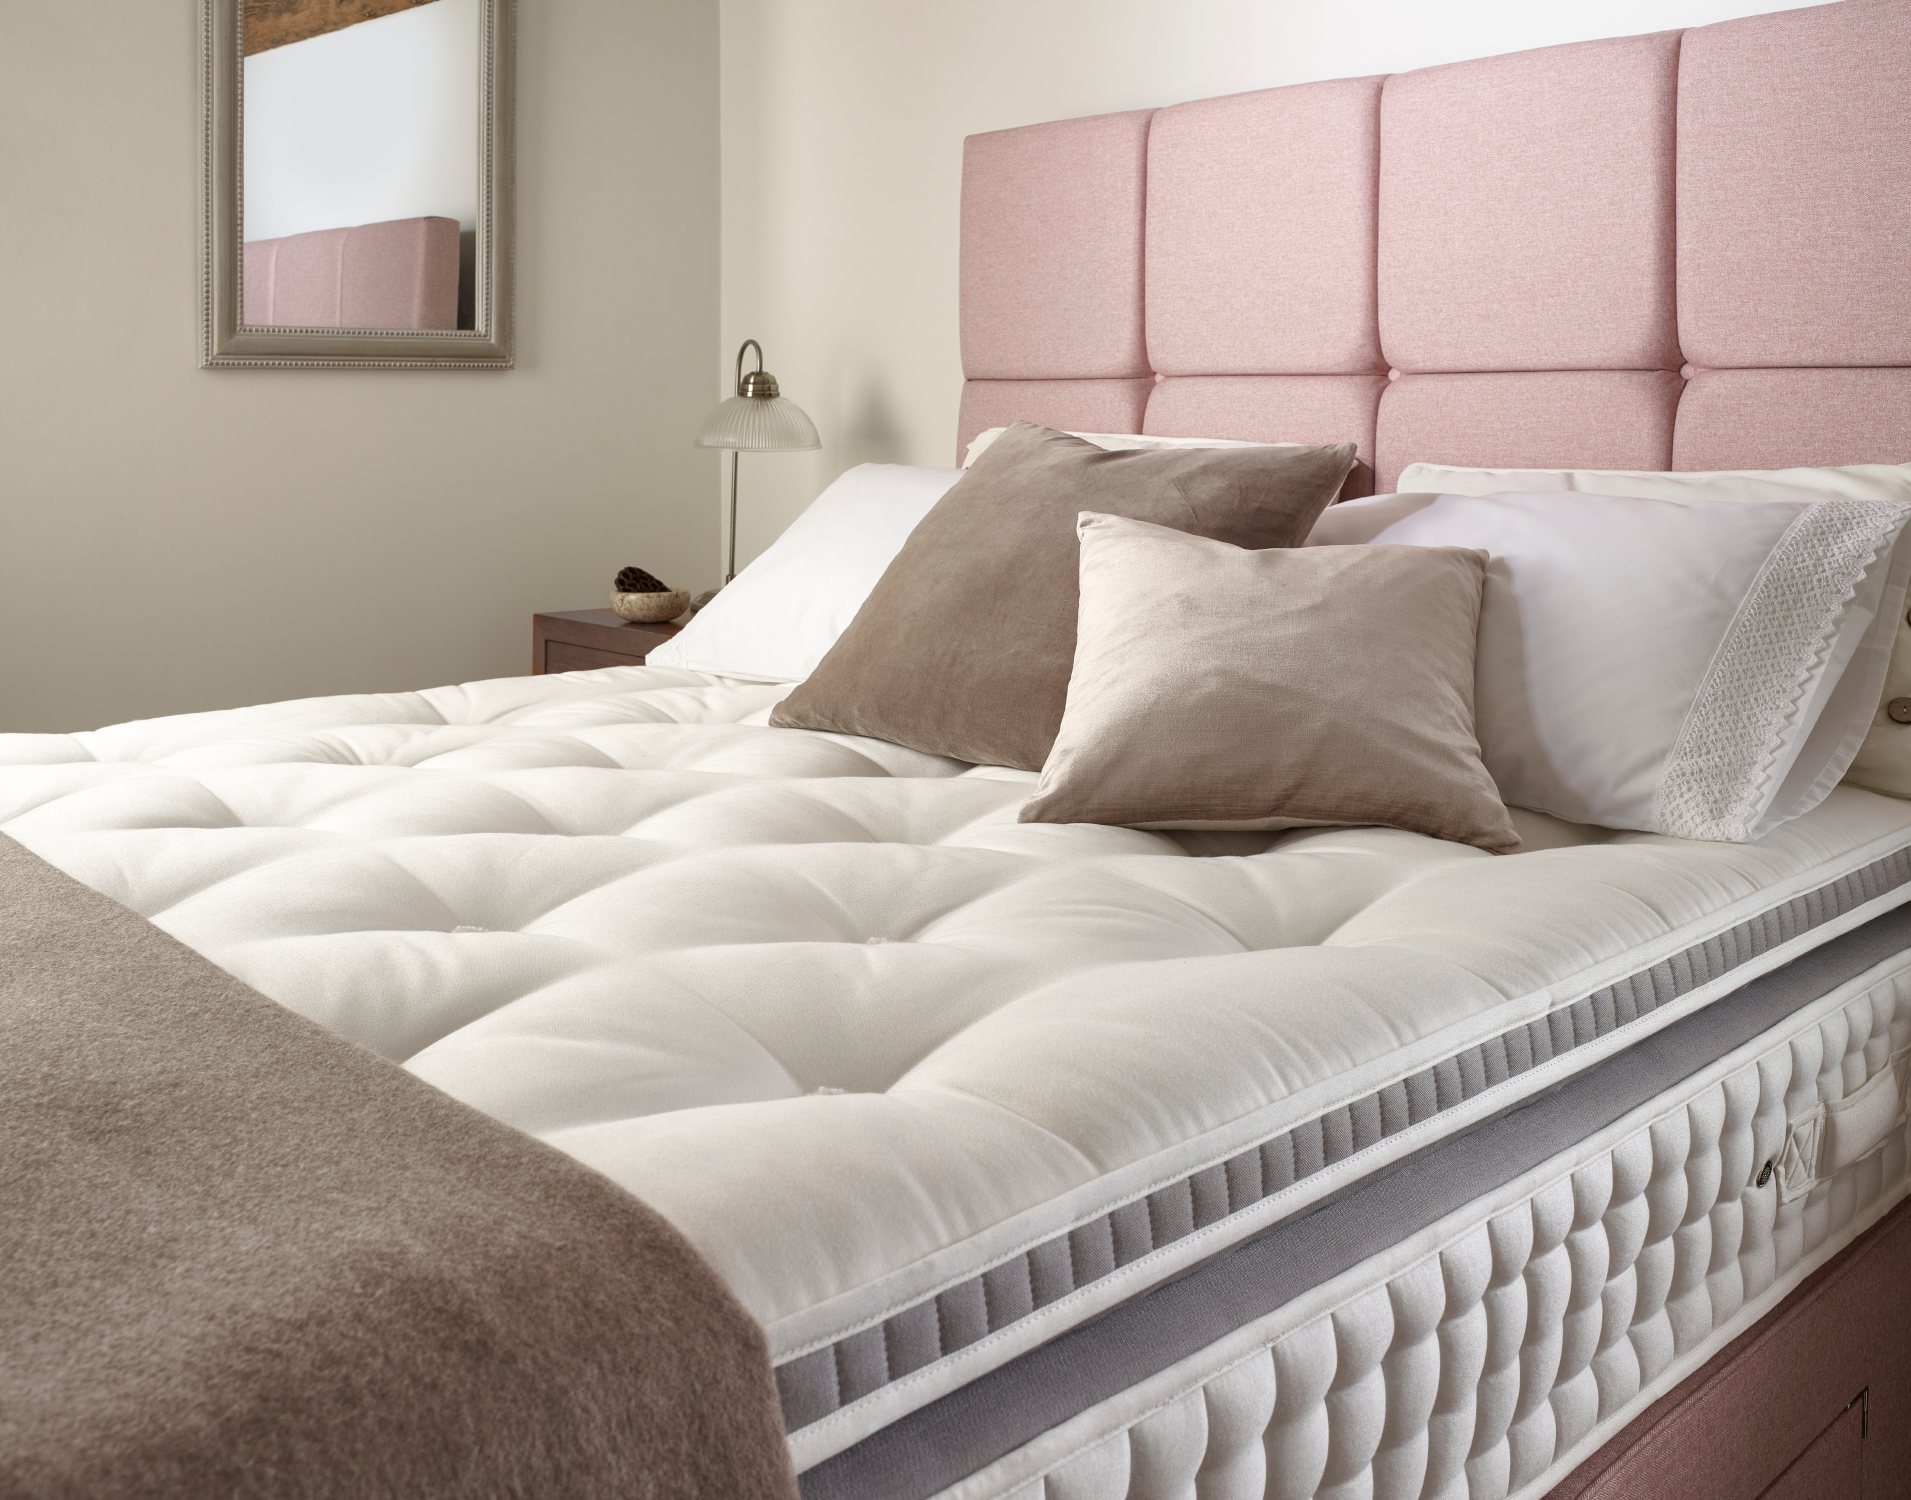 harrison spinks mattress prices